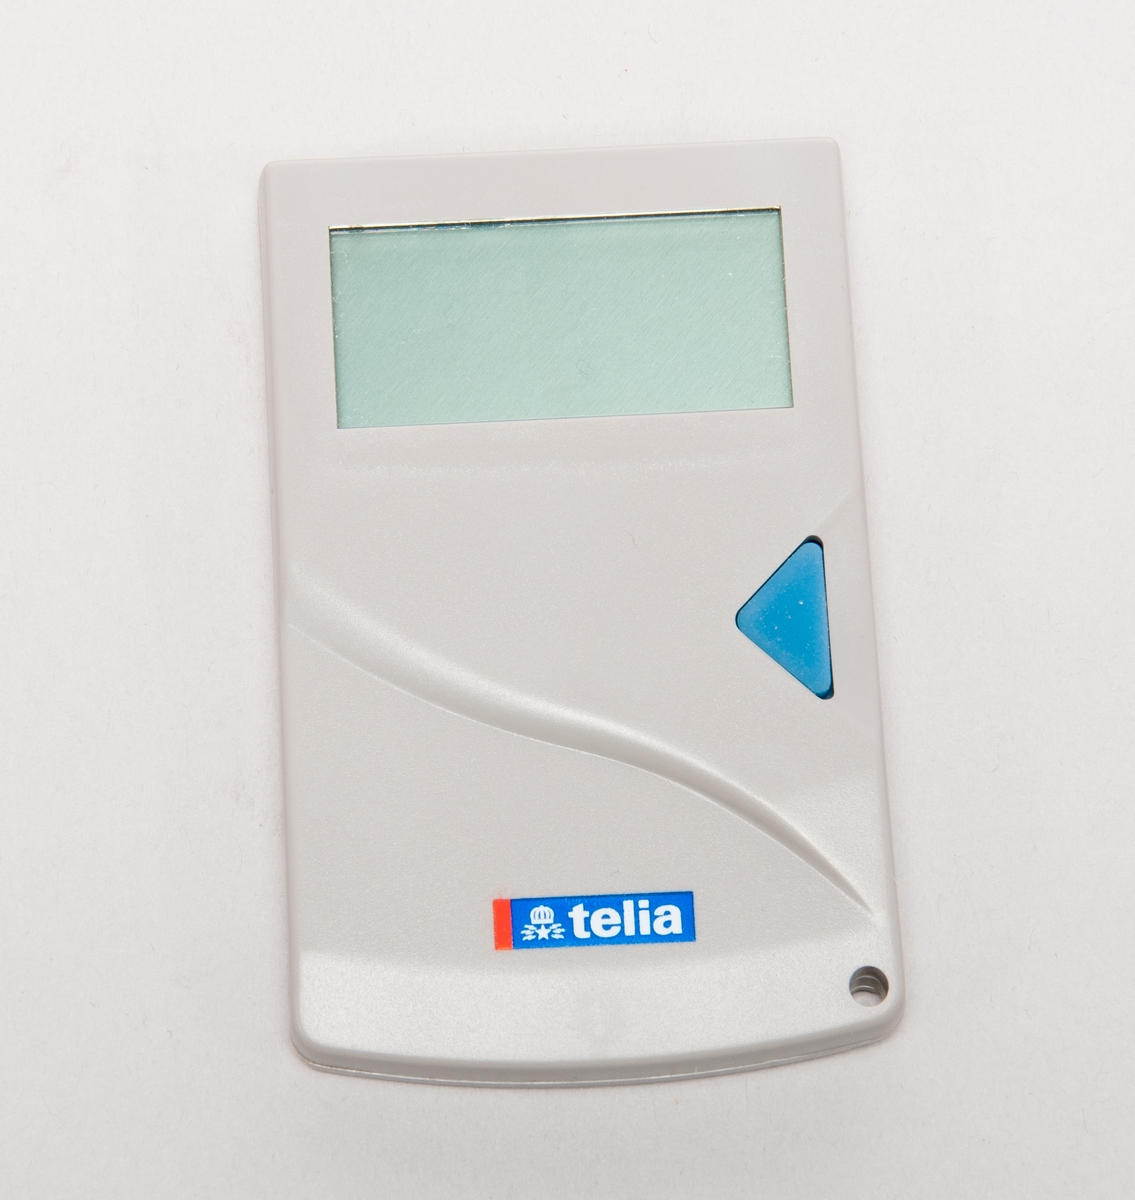 Telefonkortsläsare i förpackning. Märkt "Telia"

Typ R010200 nr 9503